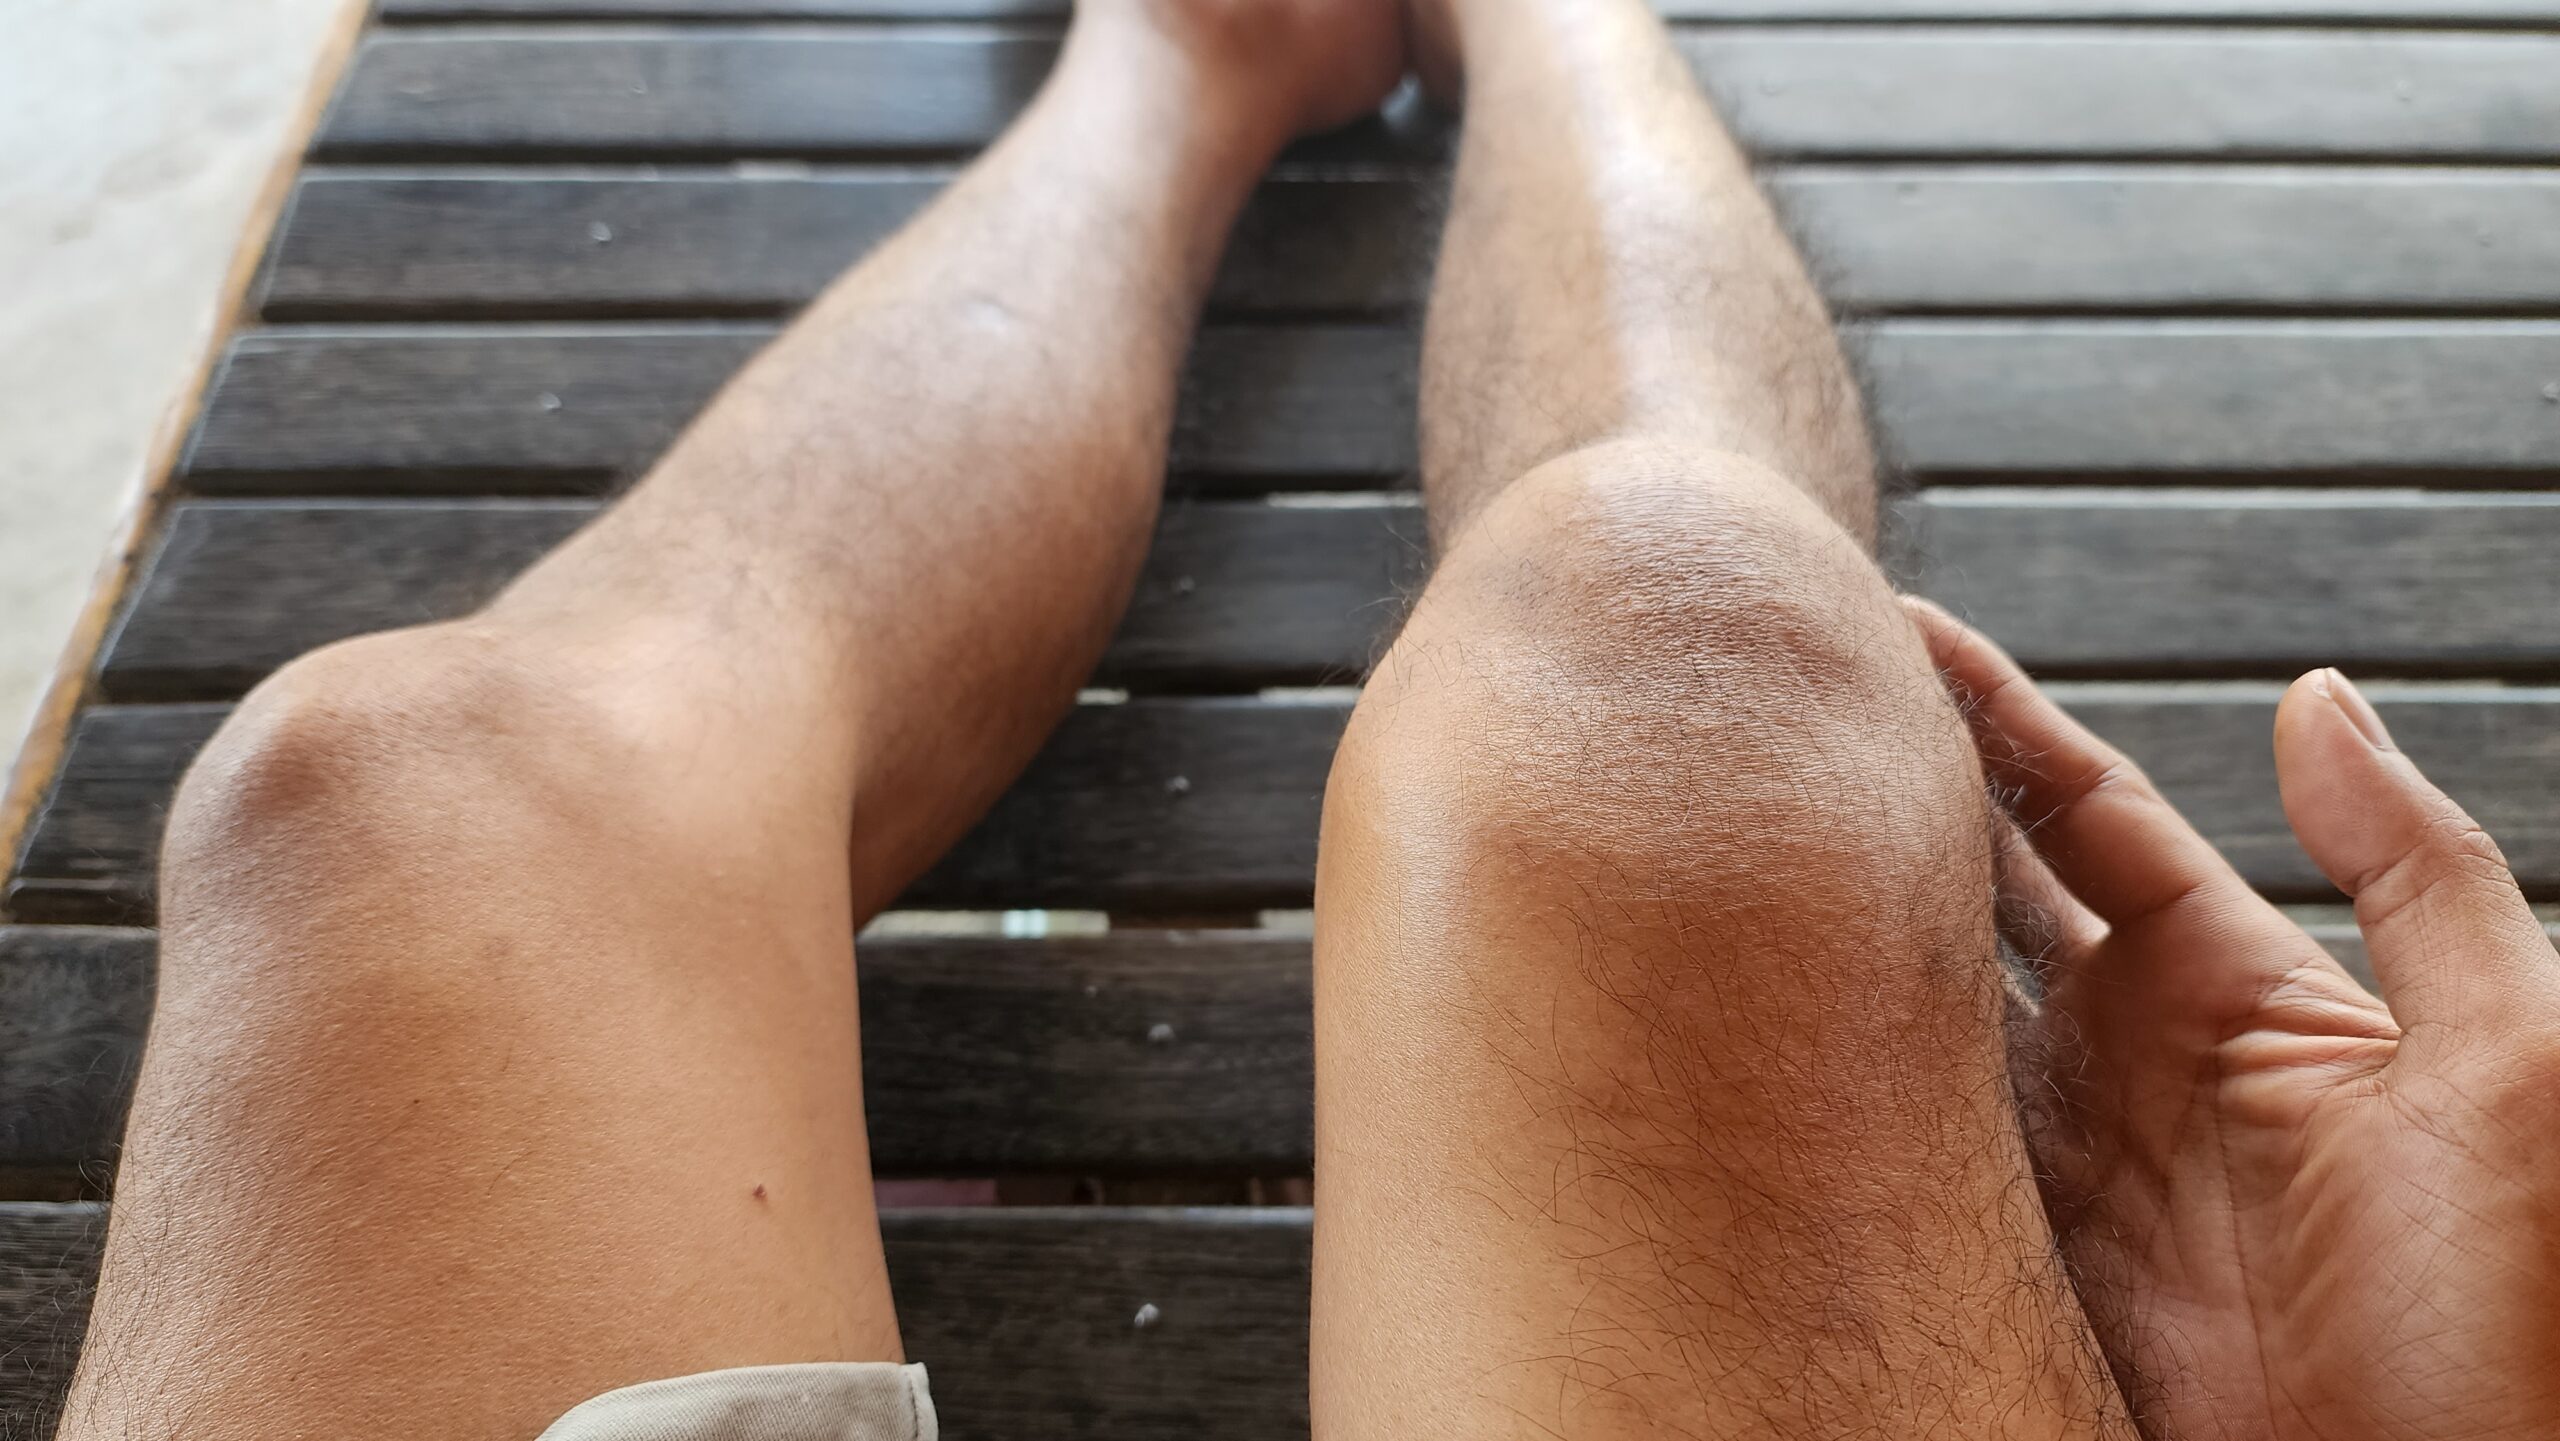 Schwellung im Knie durch Patellaluxation - Herausgesprungene Kniescheibe